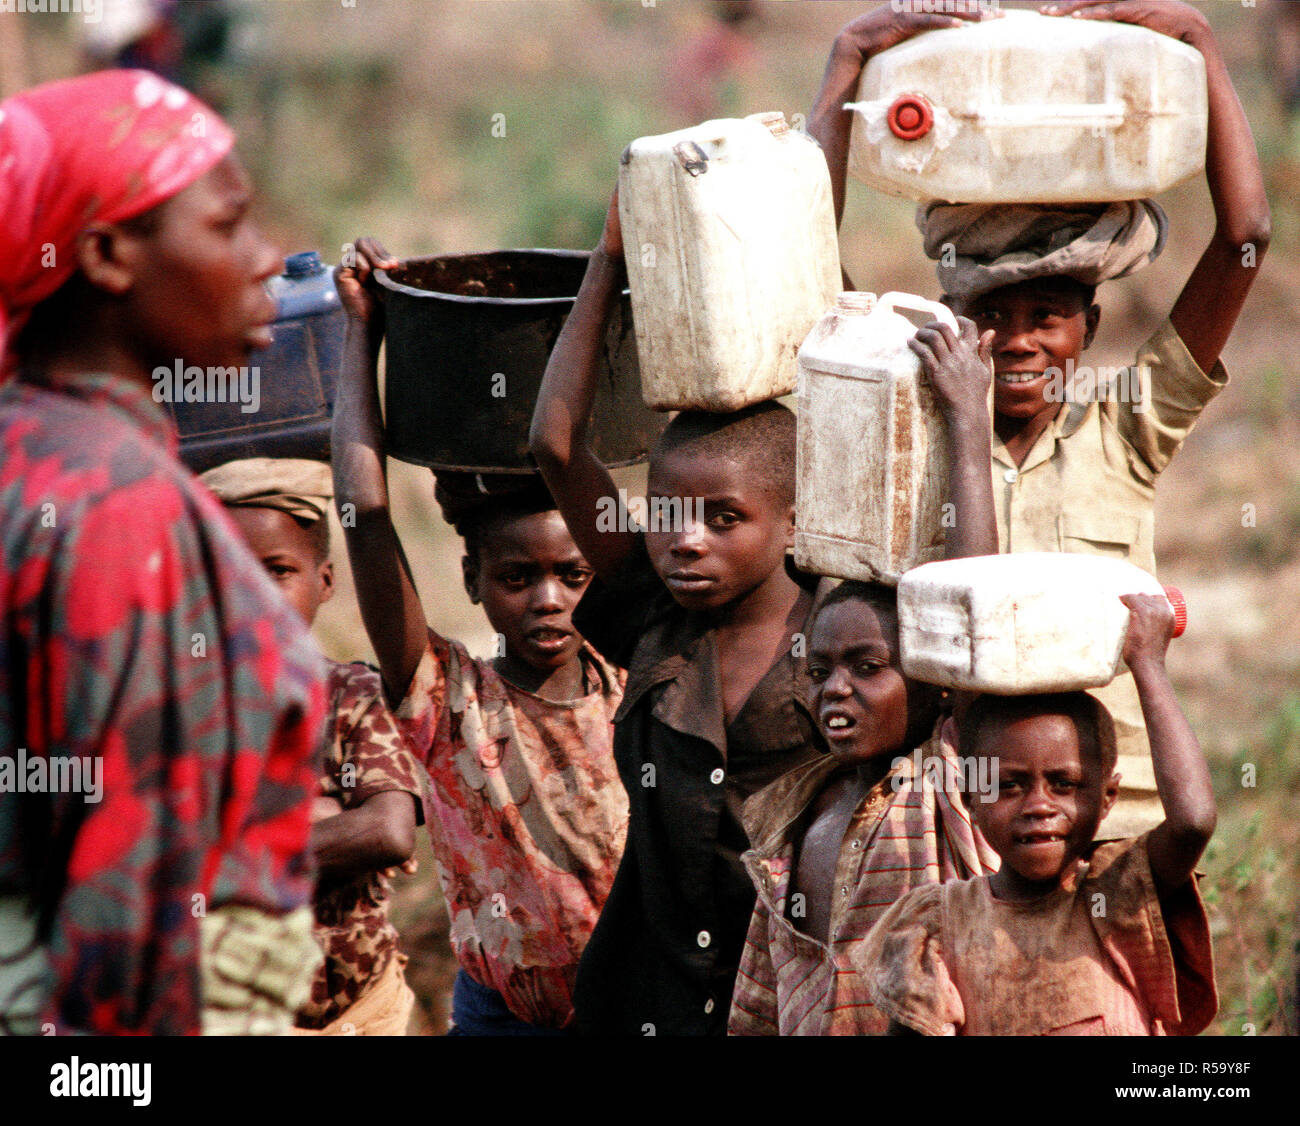 1994 - i bambini sfollati e profughi del Ruanda amaro della guerra civile tra le etnie hutu e tutsi tribù in Africa australe, trasportare contenitori di acqua in cima le loro teste. Foto Stock